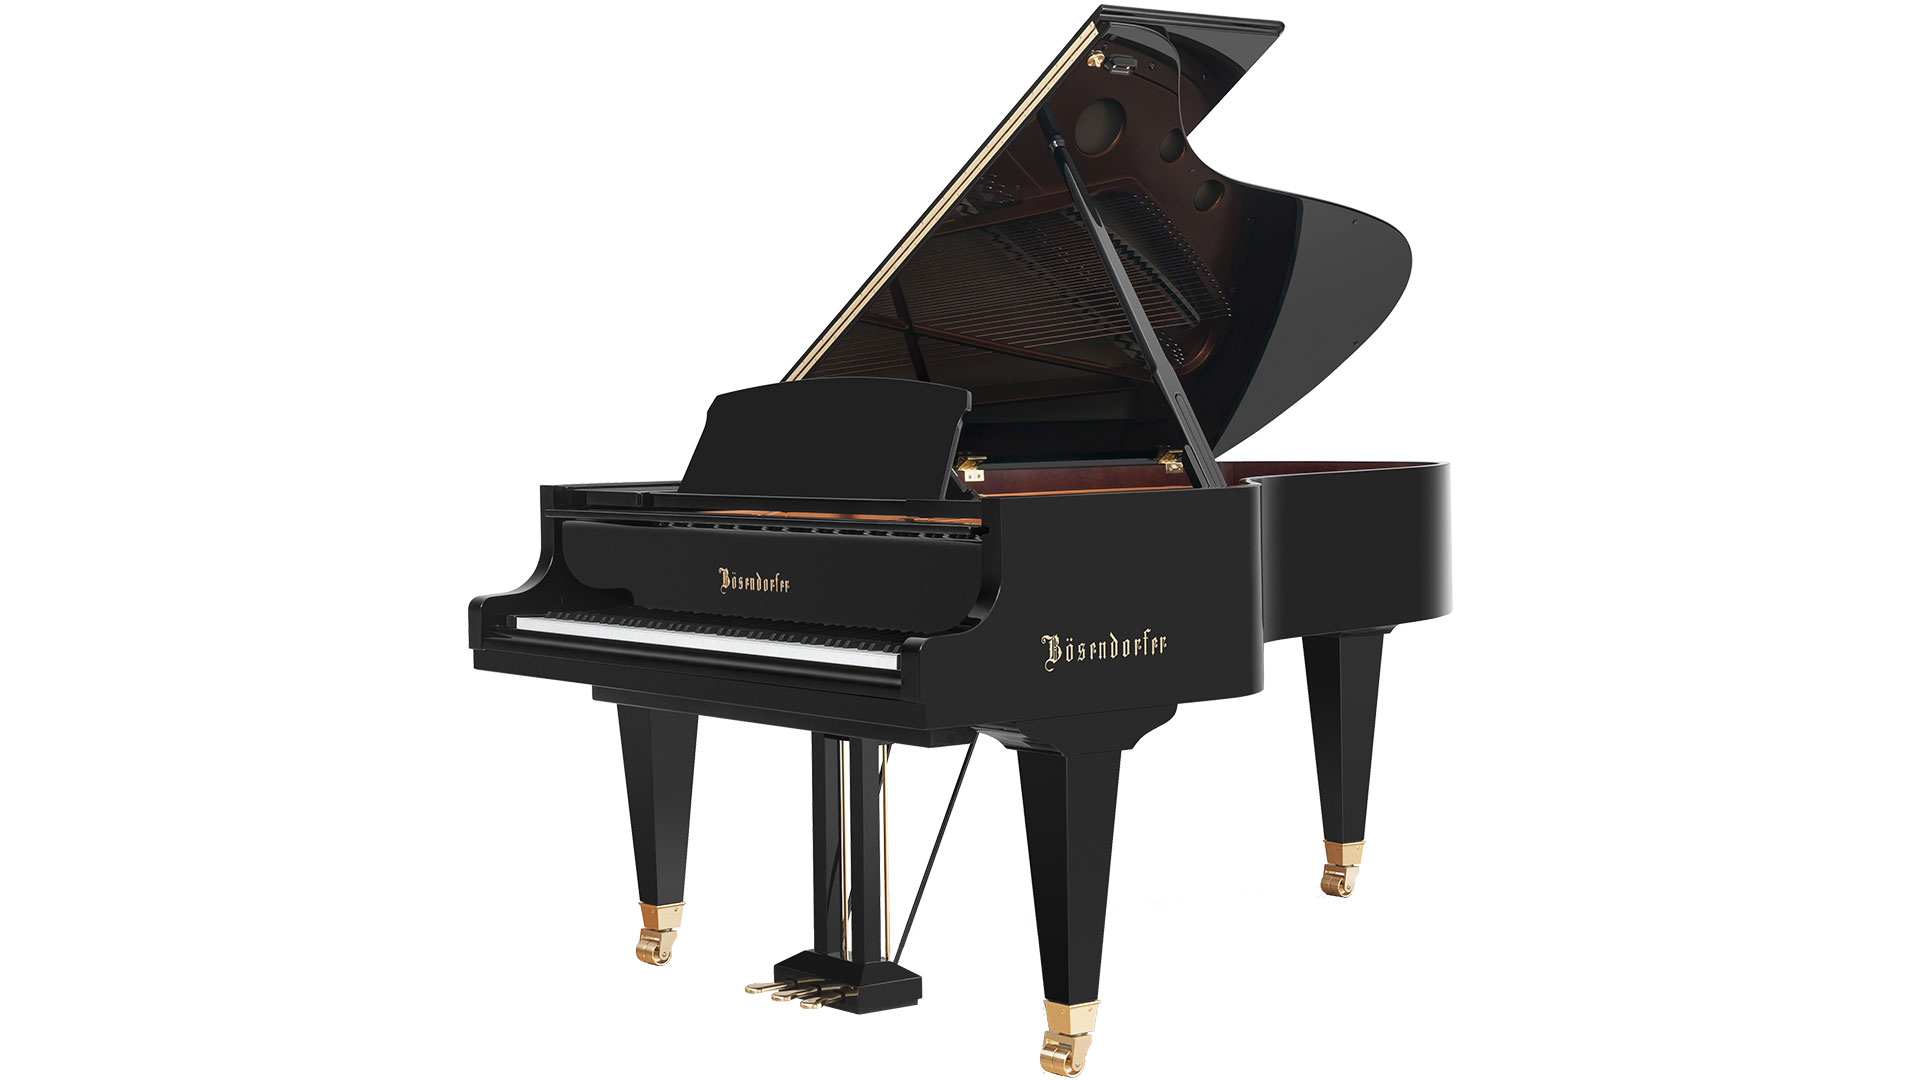 Bosendorfer piano Model 214-vc grand piano